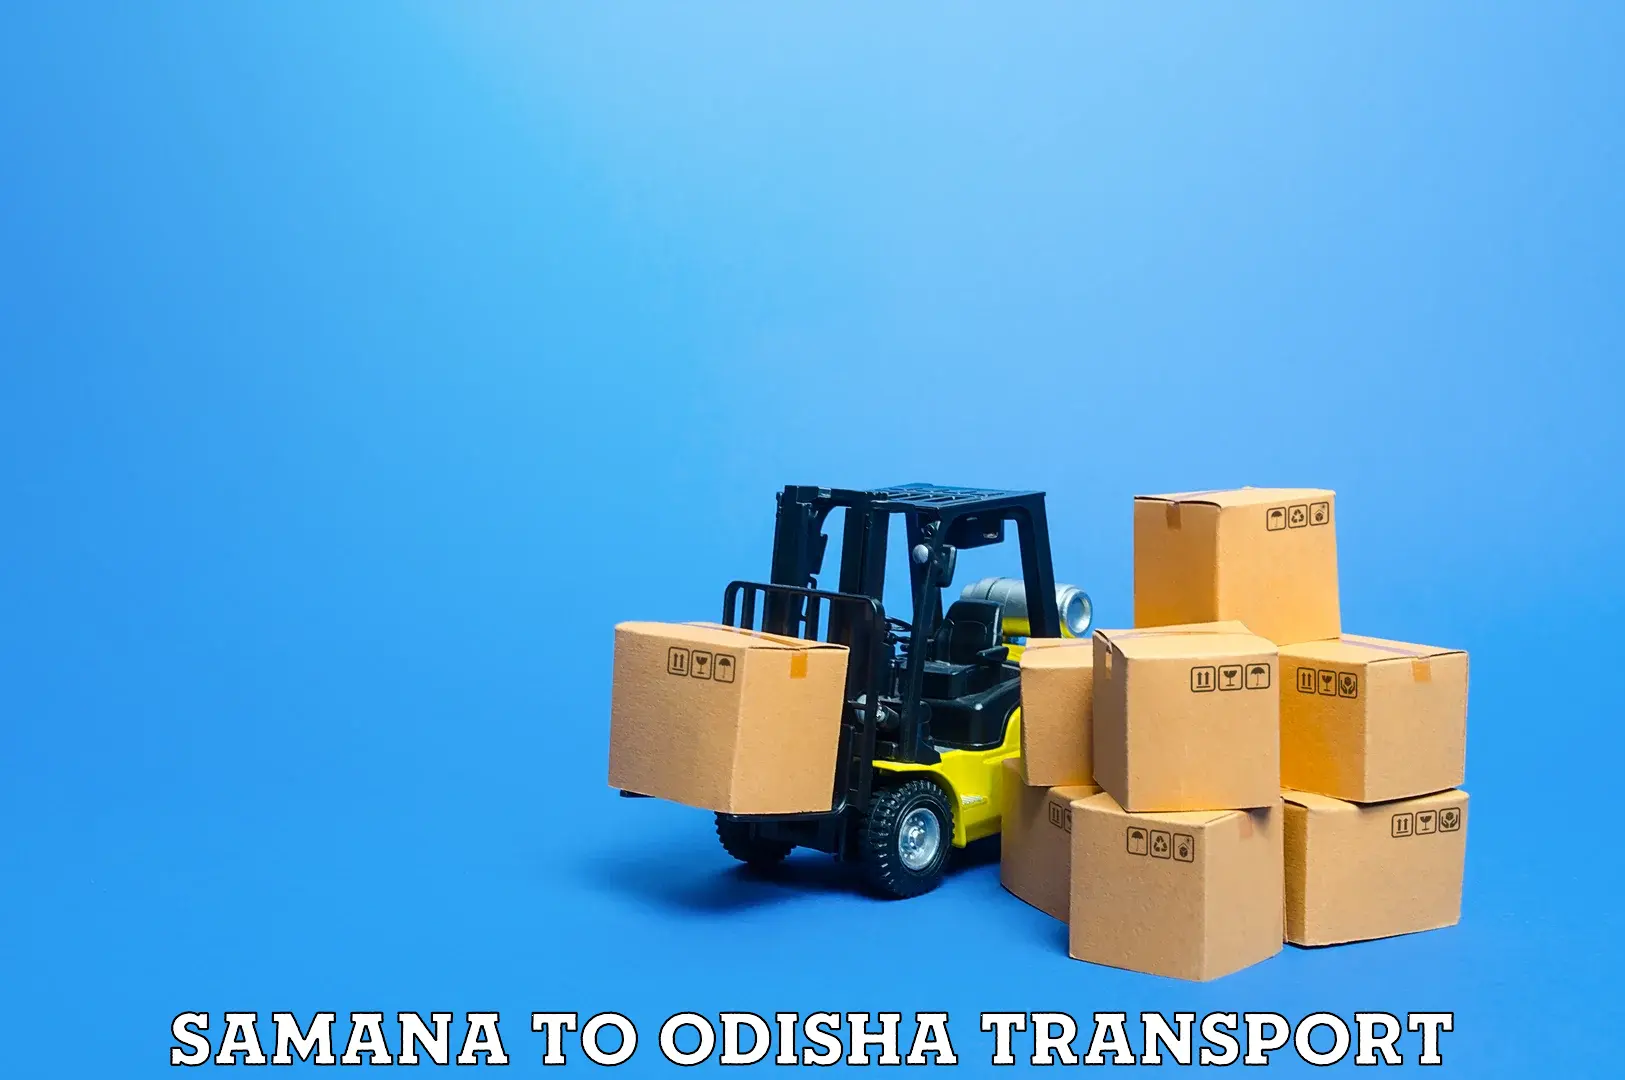 Bike transport service Samana to Odisha